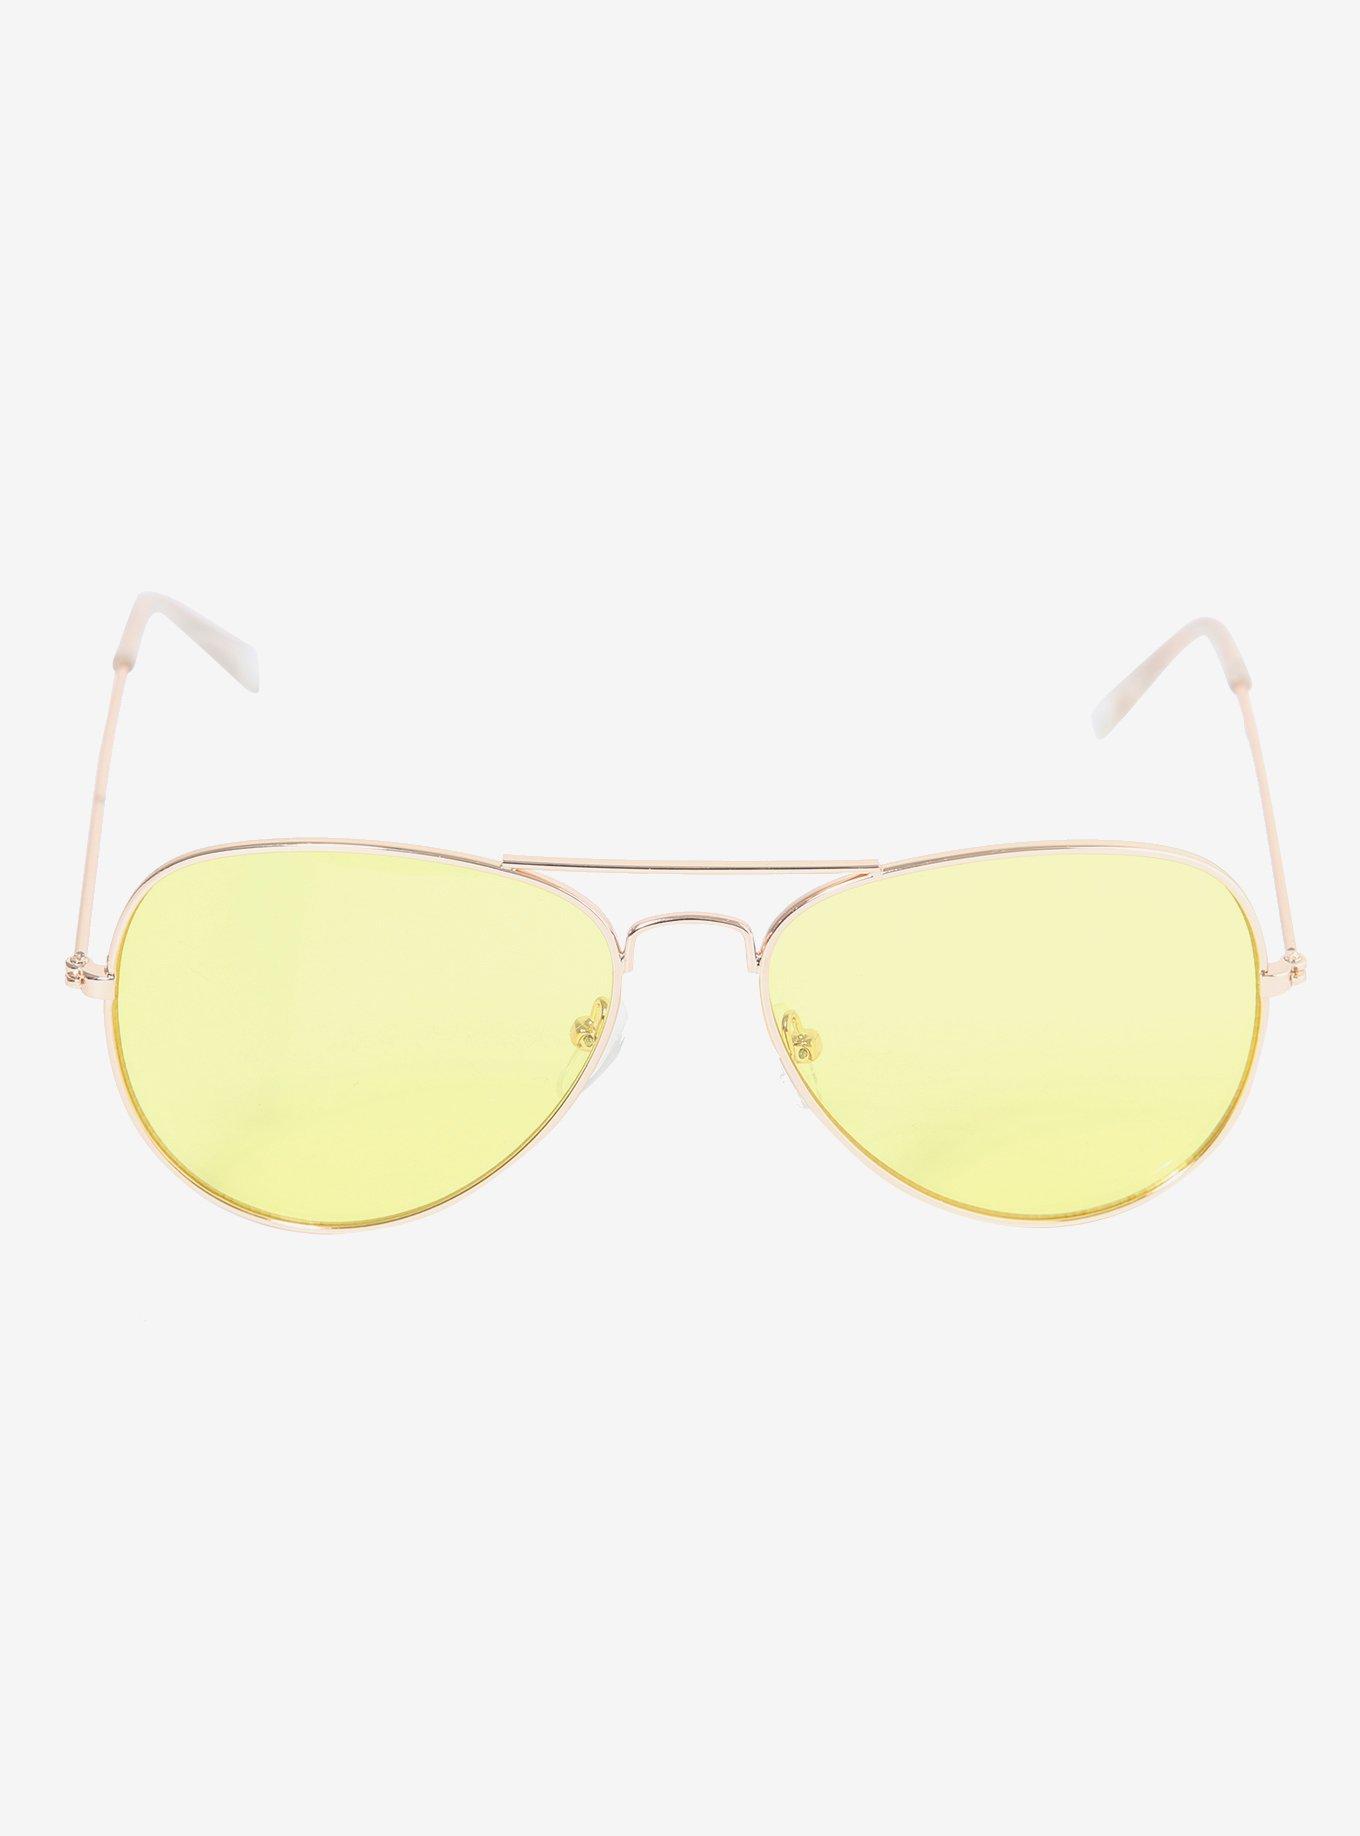 Gold Frame Yellow Lens Aviator Sunglasses, , alternate